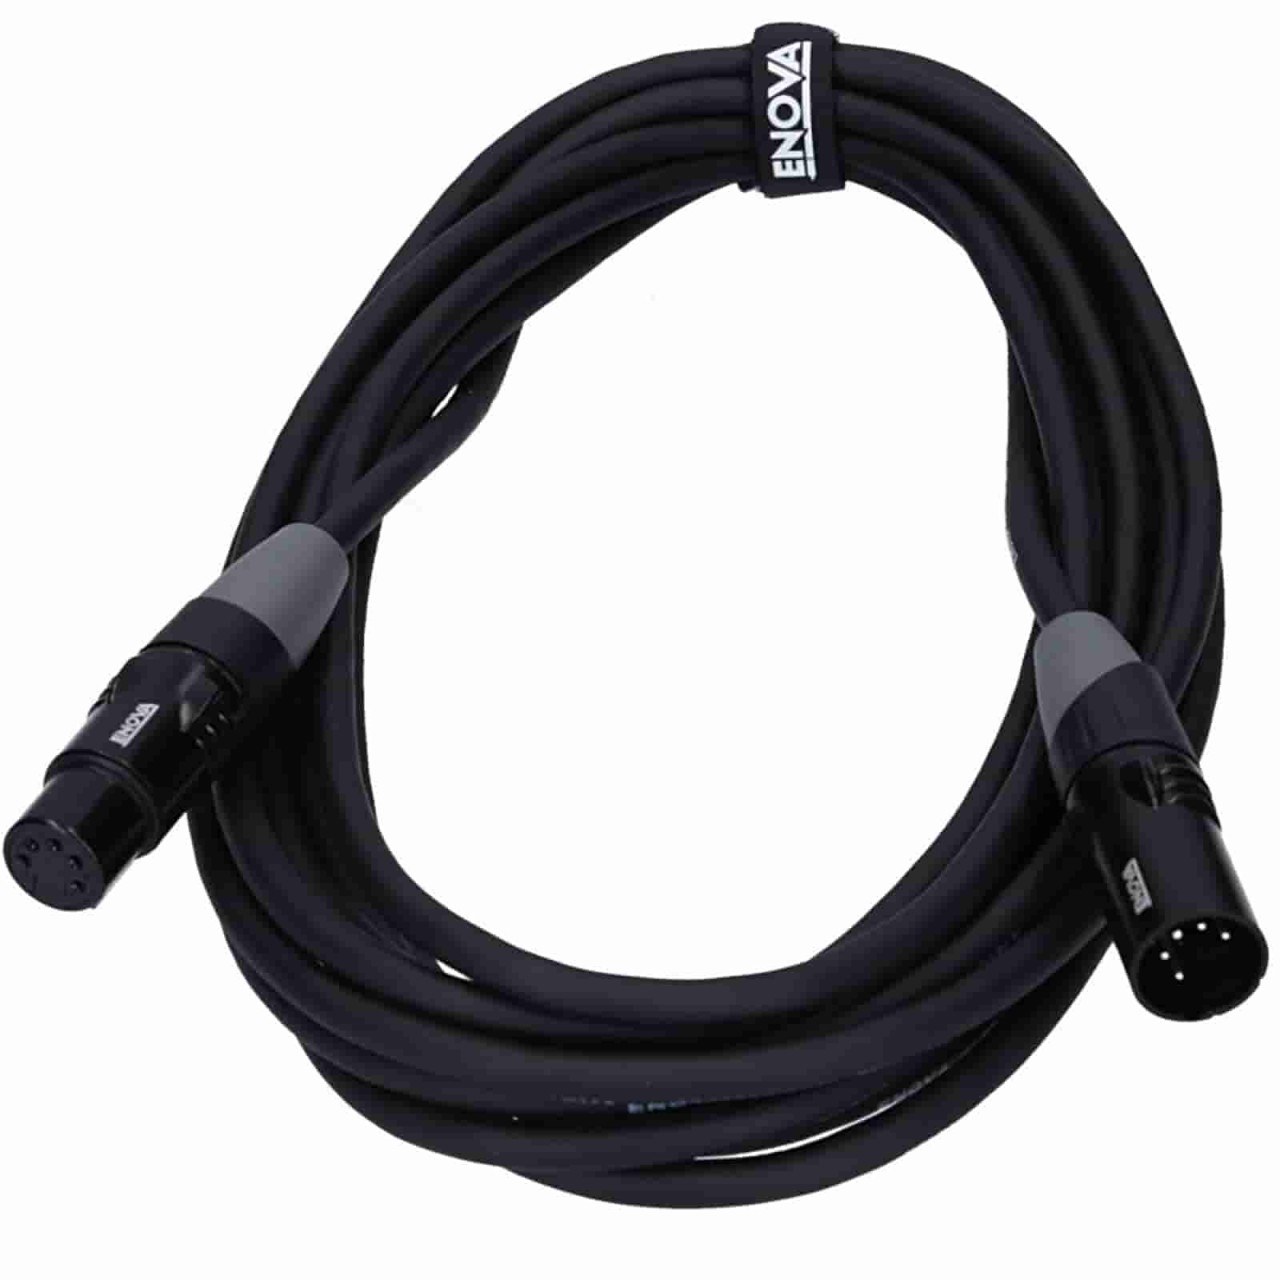 short 0.5 meter DMX cable - ENOVA EC-L1-XLFM5-0.5 - Professional 5 pin XLR cable for light control